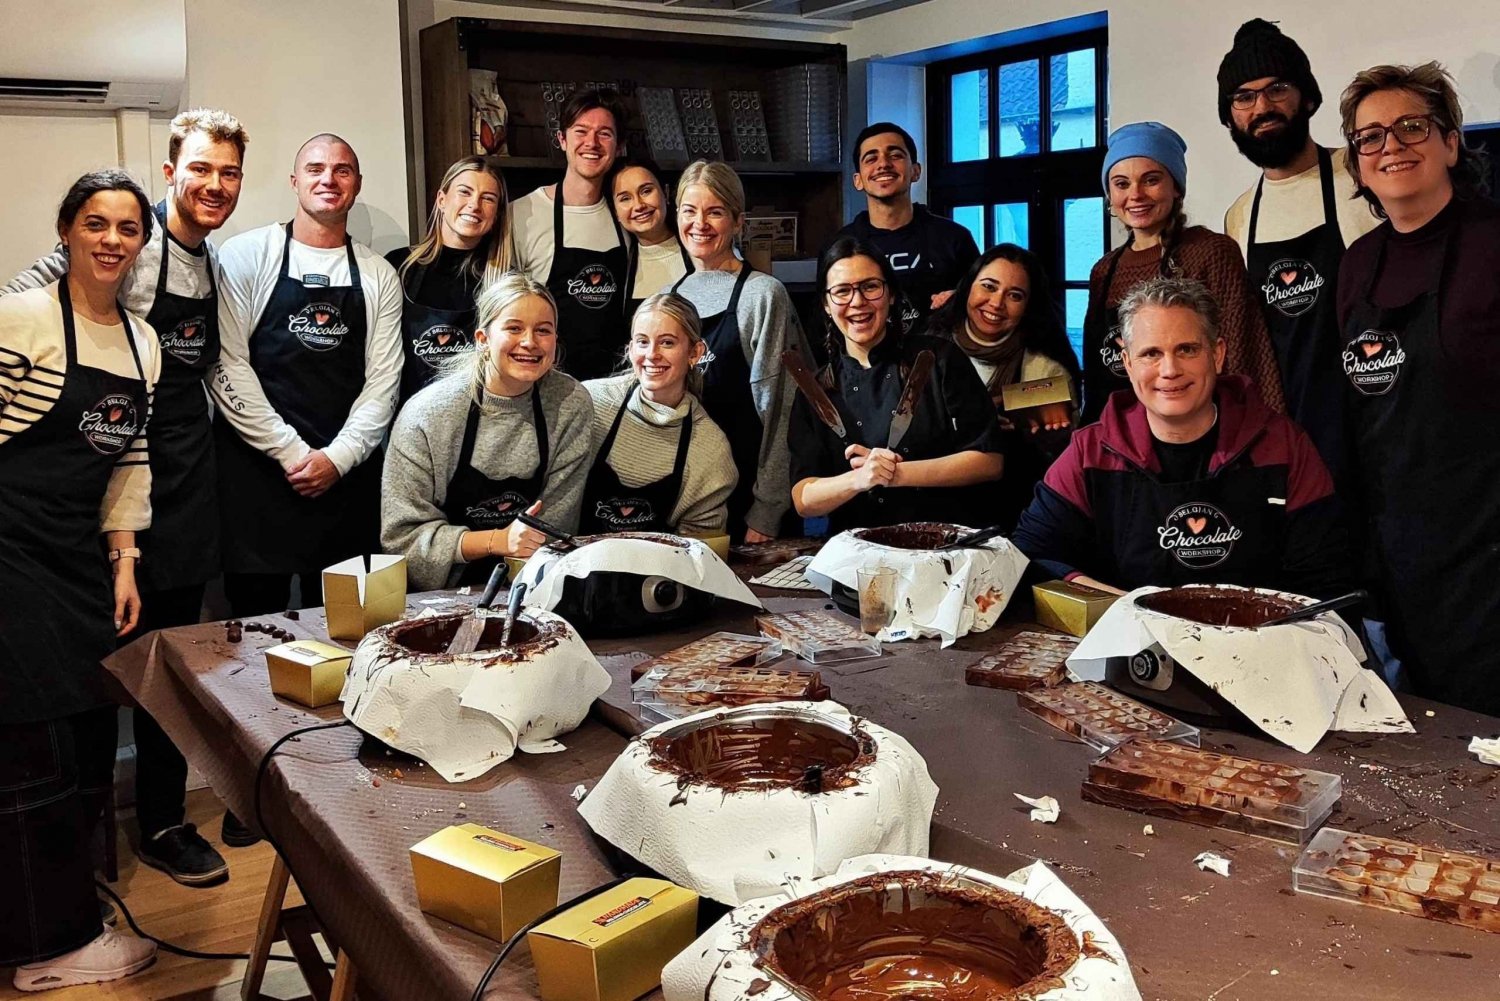 Bruksela: Warsztaty i degustacja belgijskich trufli czekoladowych